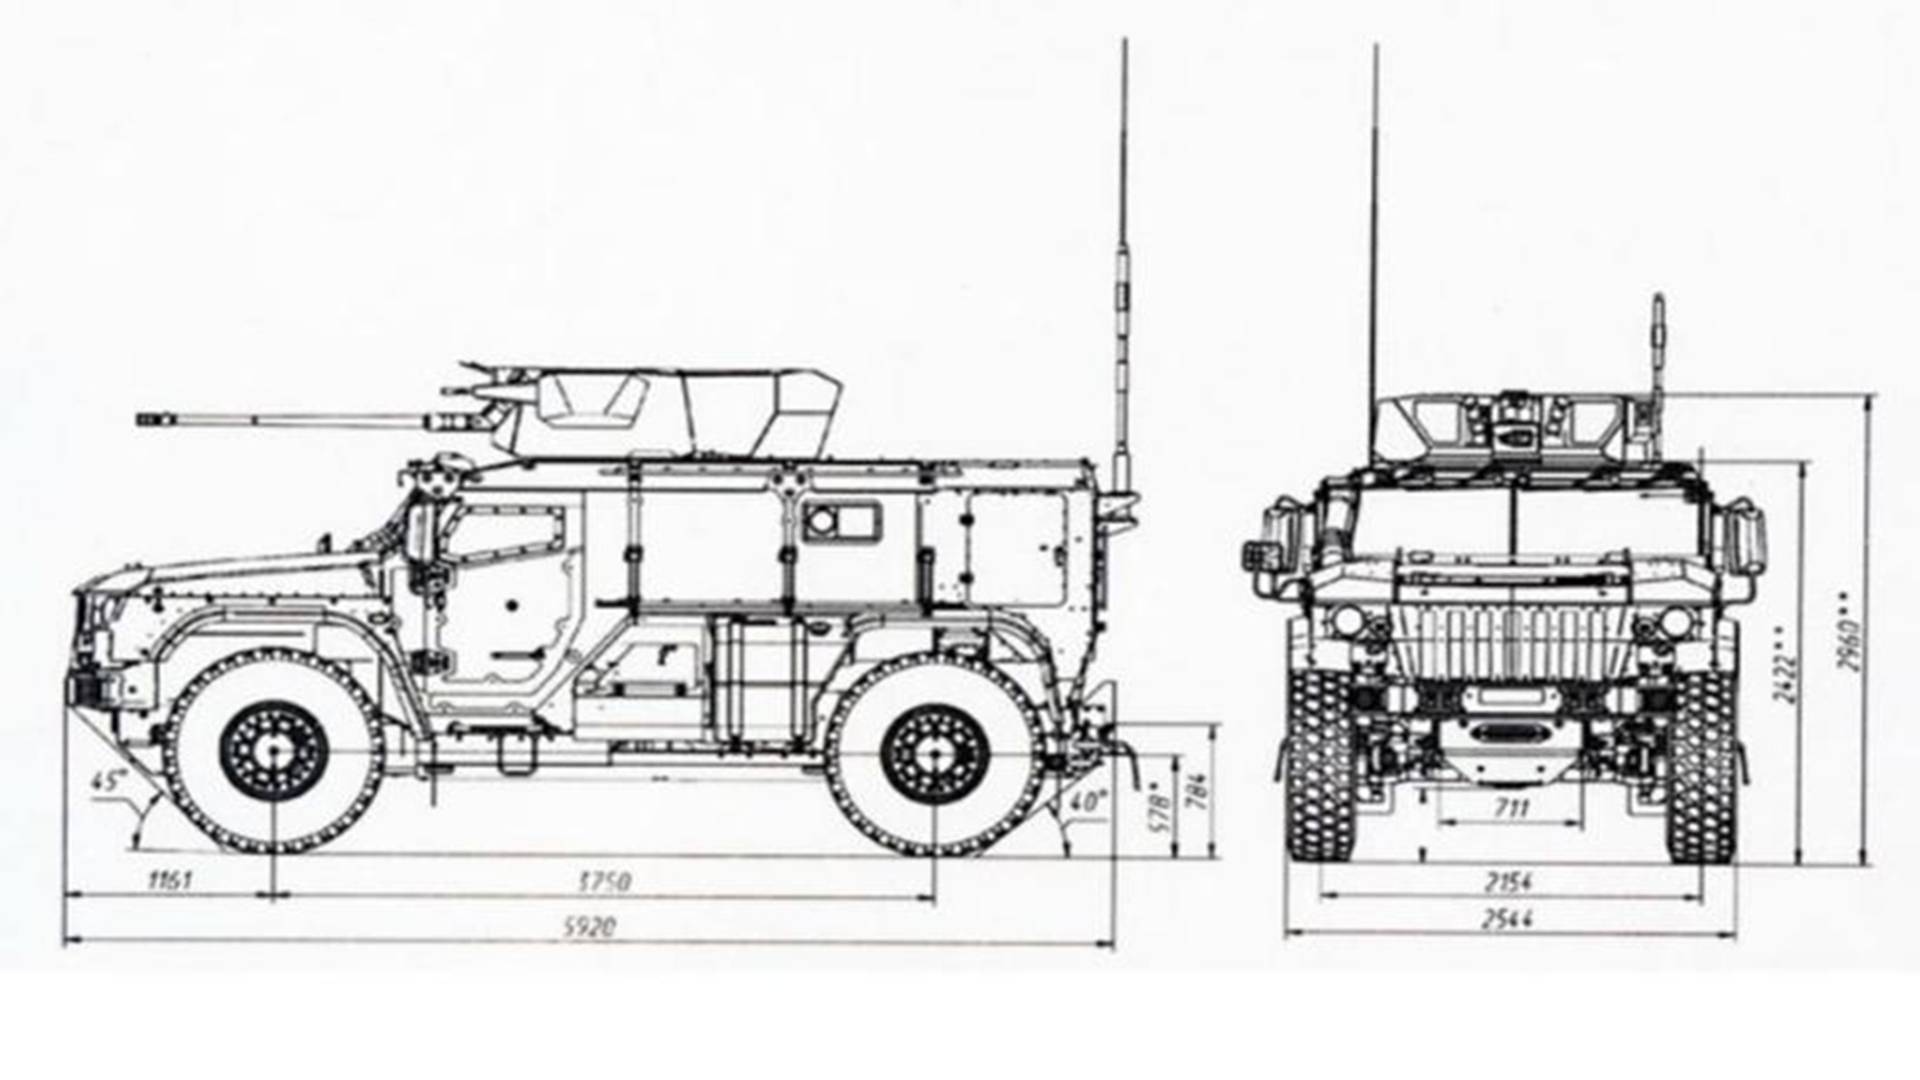 原创凶猛"狼獾"来袭,新款装甲车入列俄军,加快陆军实战灵活性